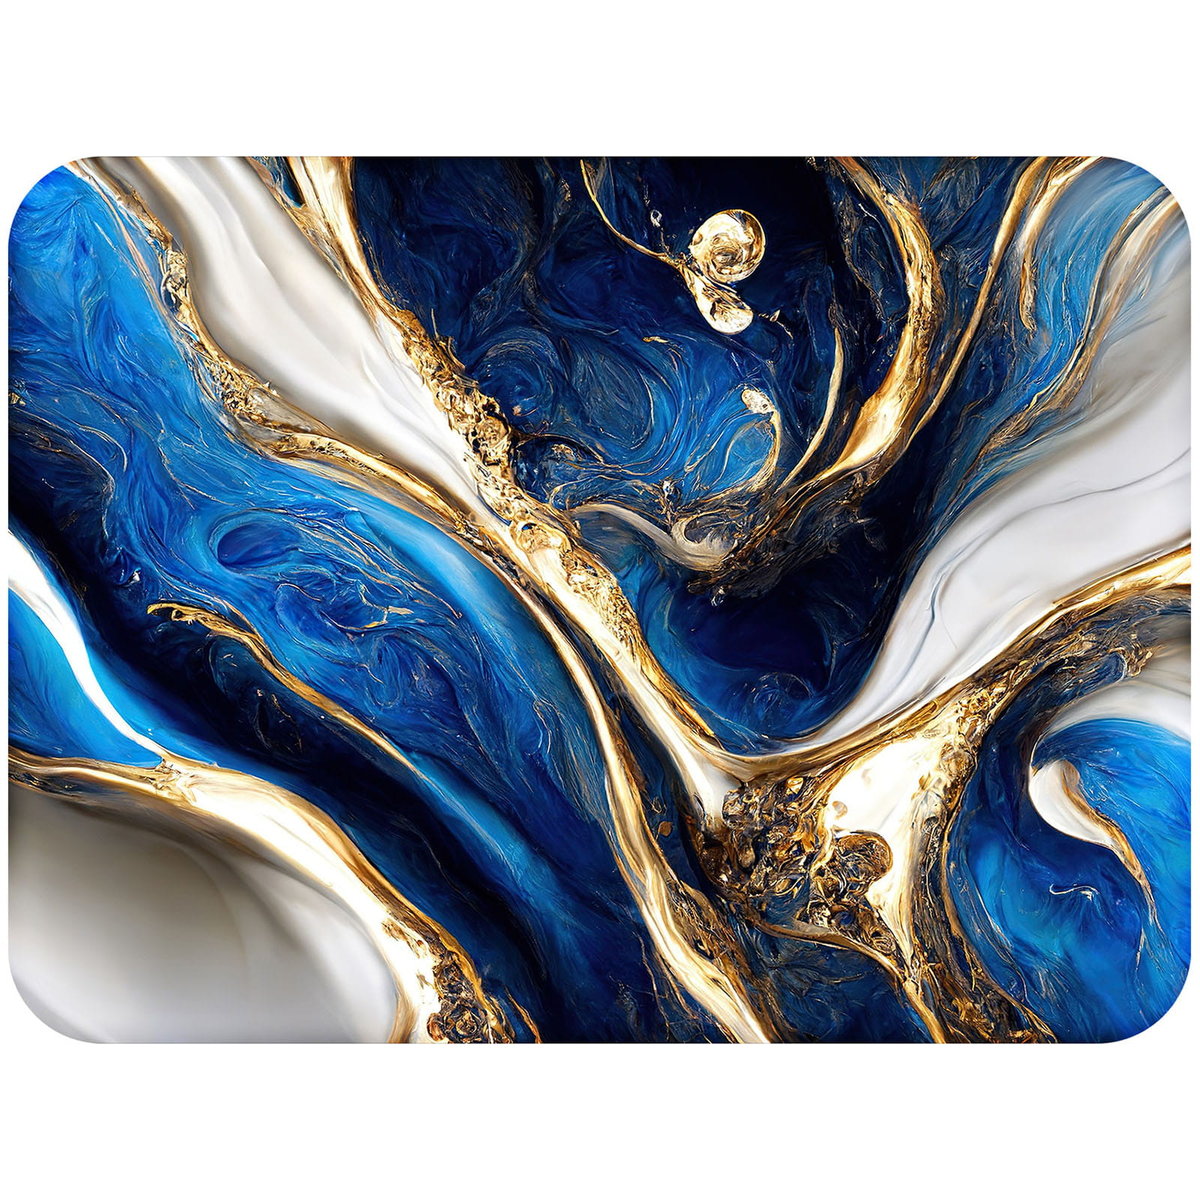 Podkładka korkowa na stół z nadrukiem - Marble blue and gold 2 w rozmiarze 30x40 cm